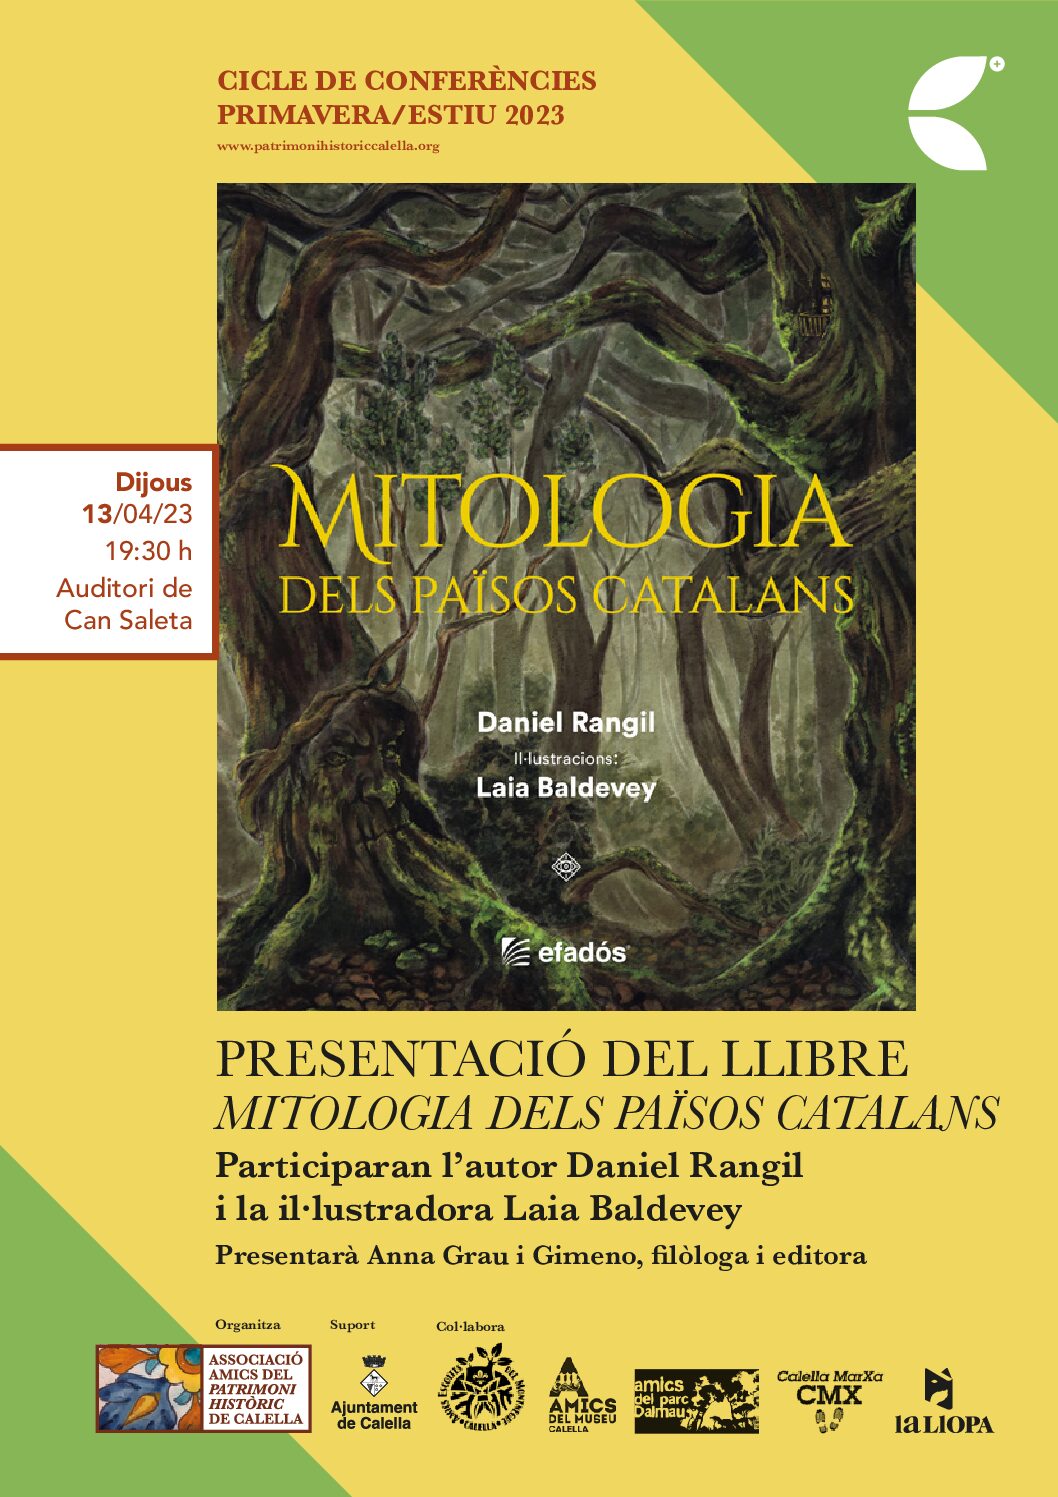 Conferència “Presentació del llibre mitologia dels Països Catalans” per Daniel Rangil i Laia Baldevey